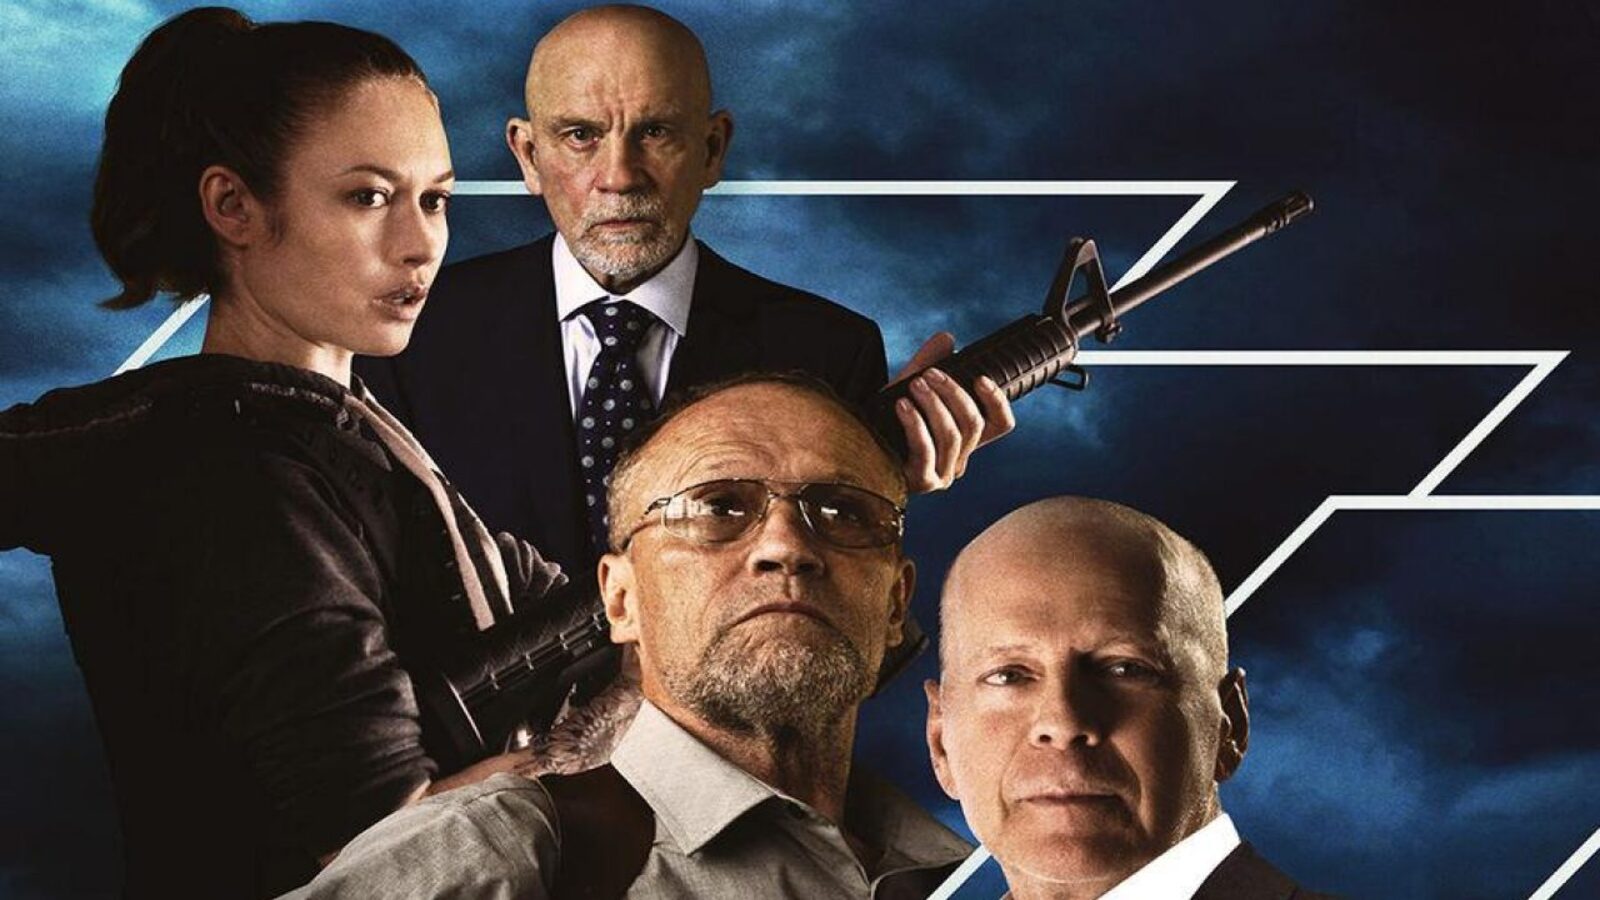 White Elephant Codice criminale, stasera su Italia 1: trama e cast del thriller con Bruce Willis